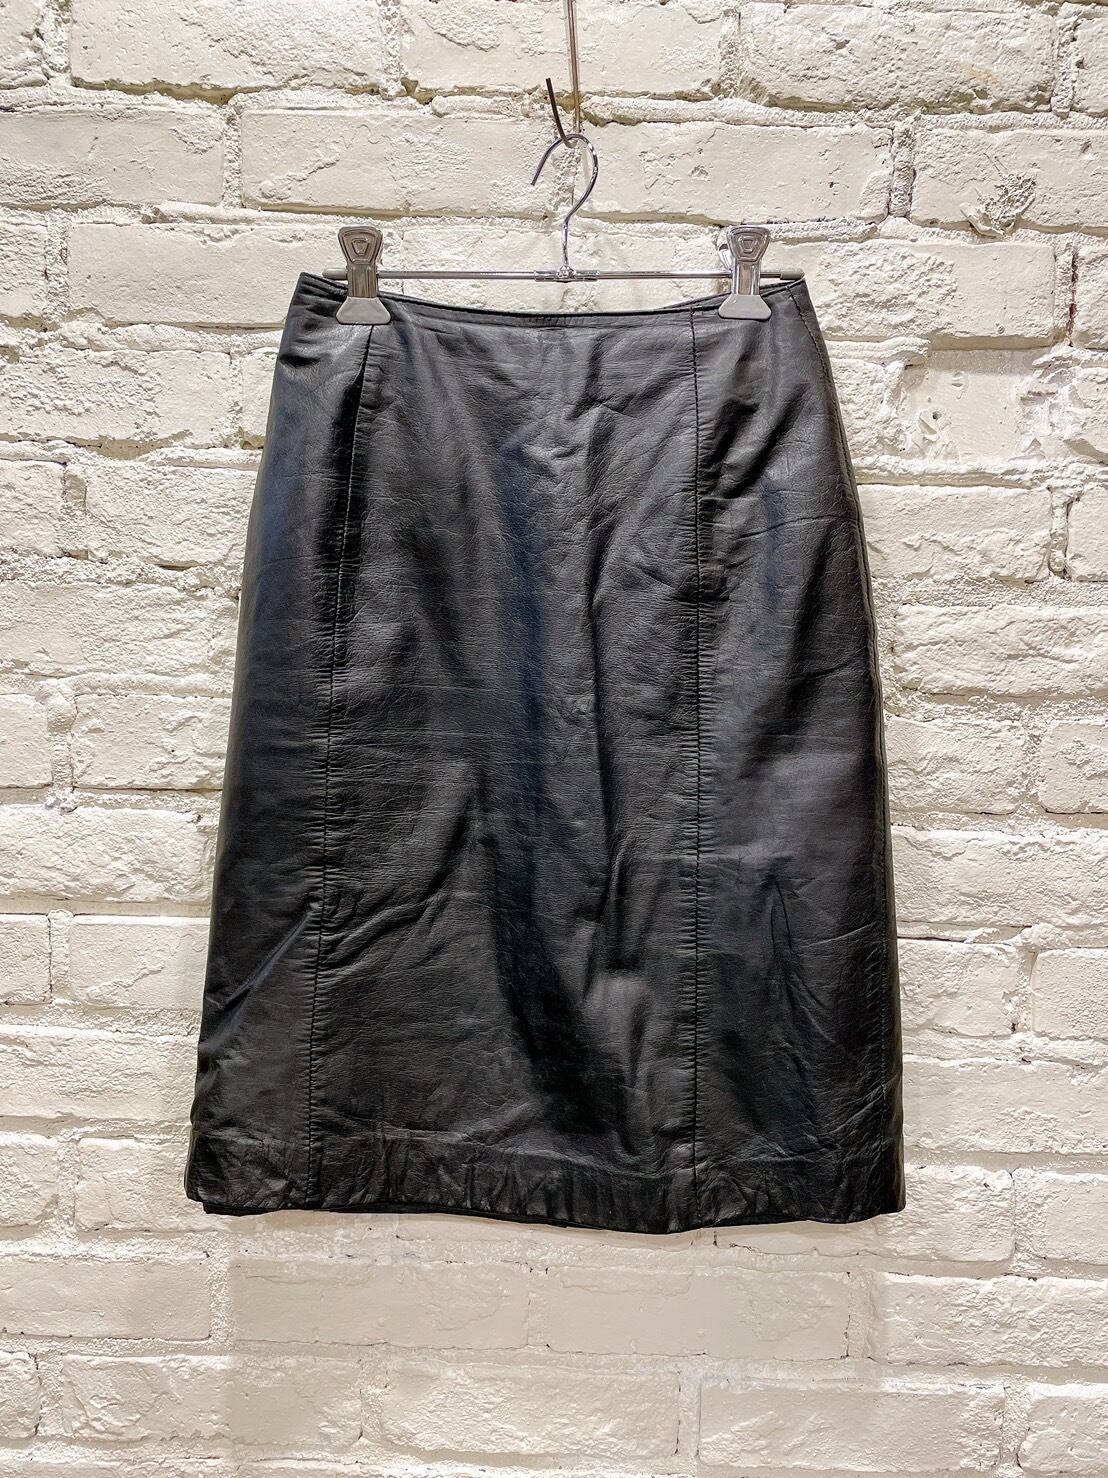 80年代〜 レザータイトスカート | Used & Vintage Clothing 『VALON』『Lanp』 powered by BASE